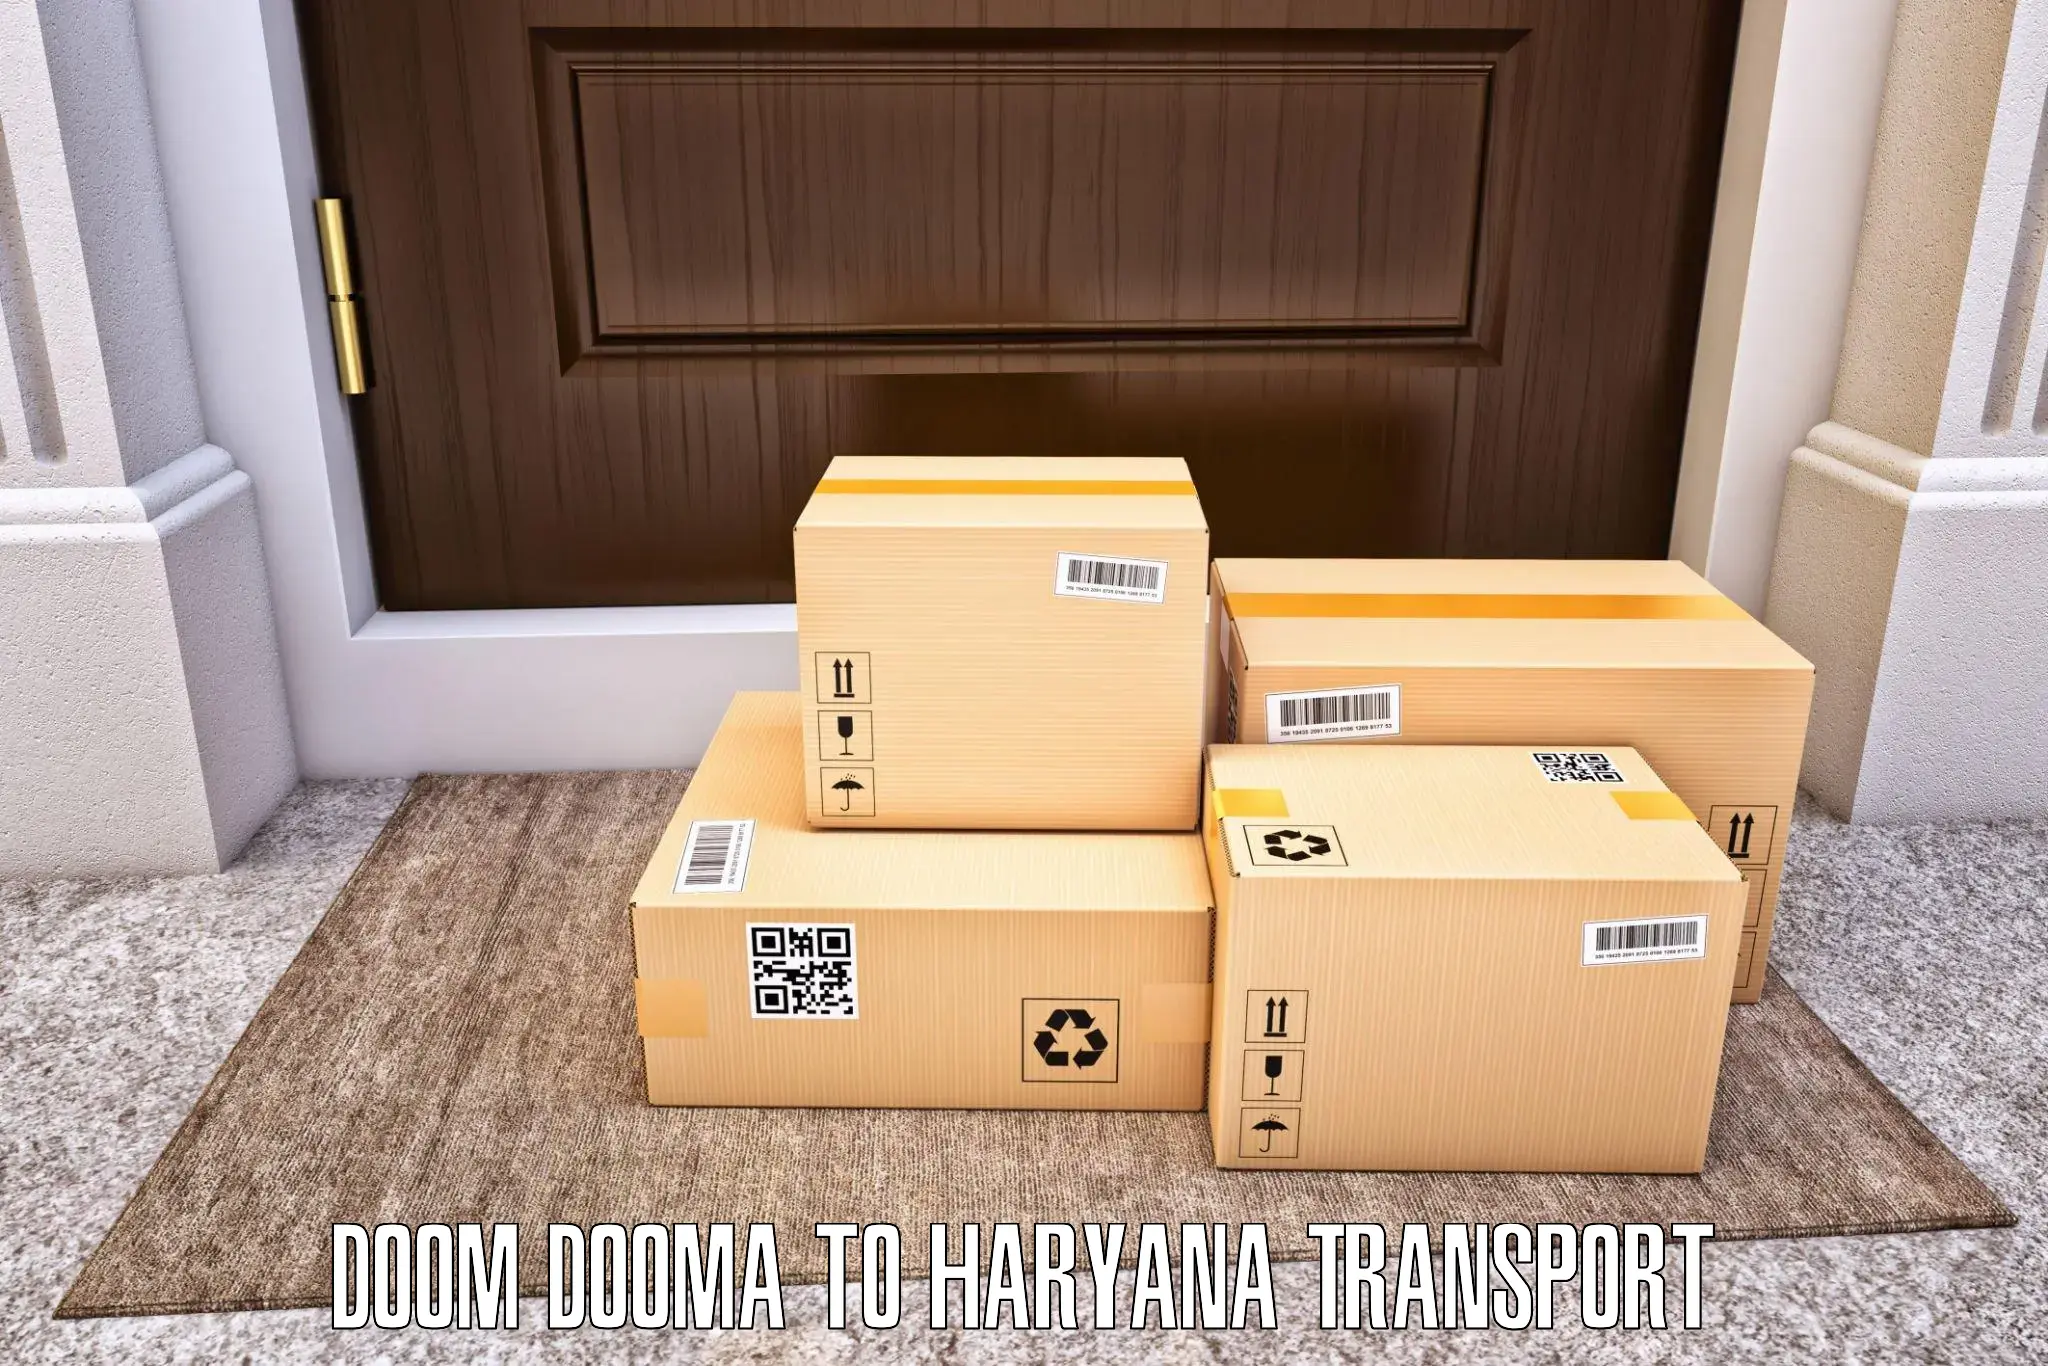 Door to door transport services Doom Dooma to Loharu